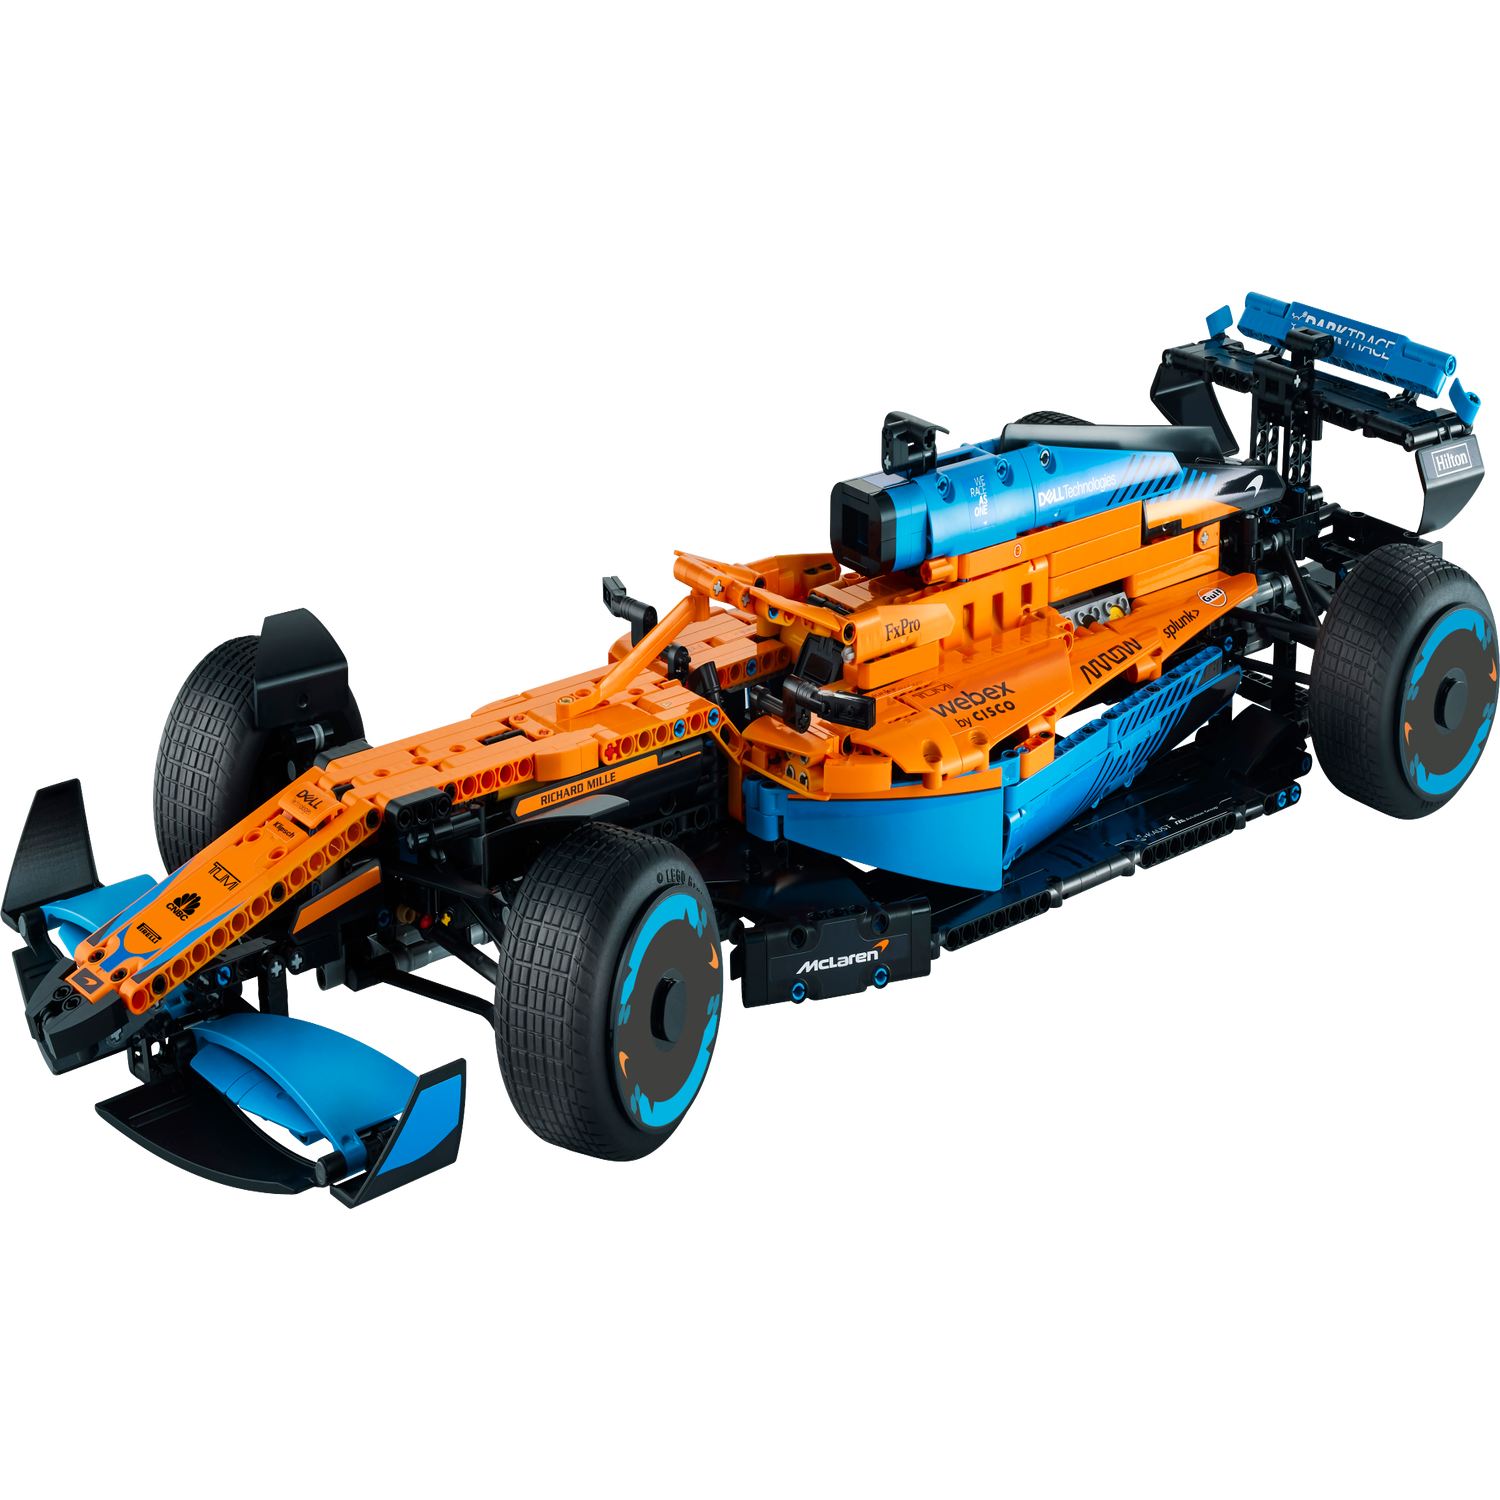 La voiture de course McLaren Formula 1™ 42141, Technic